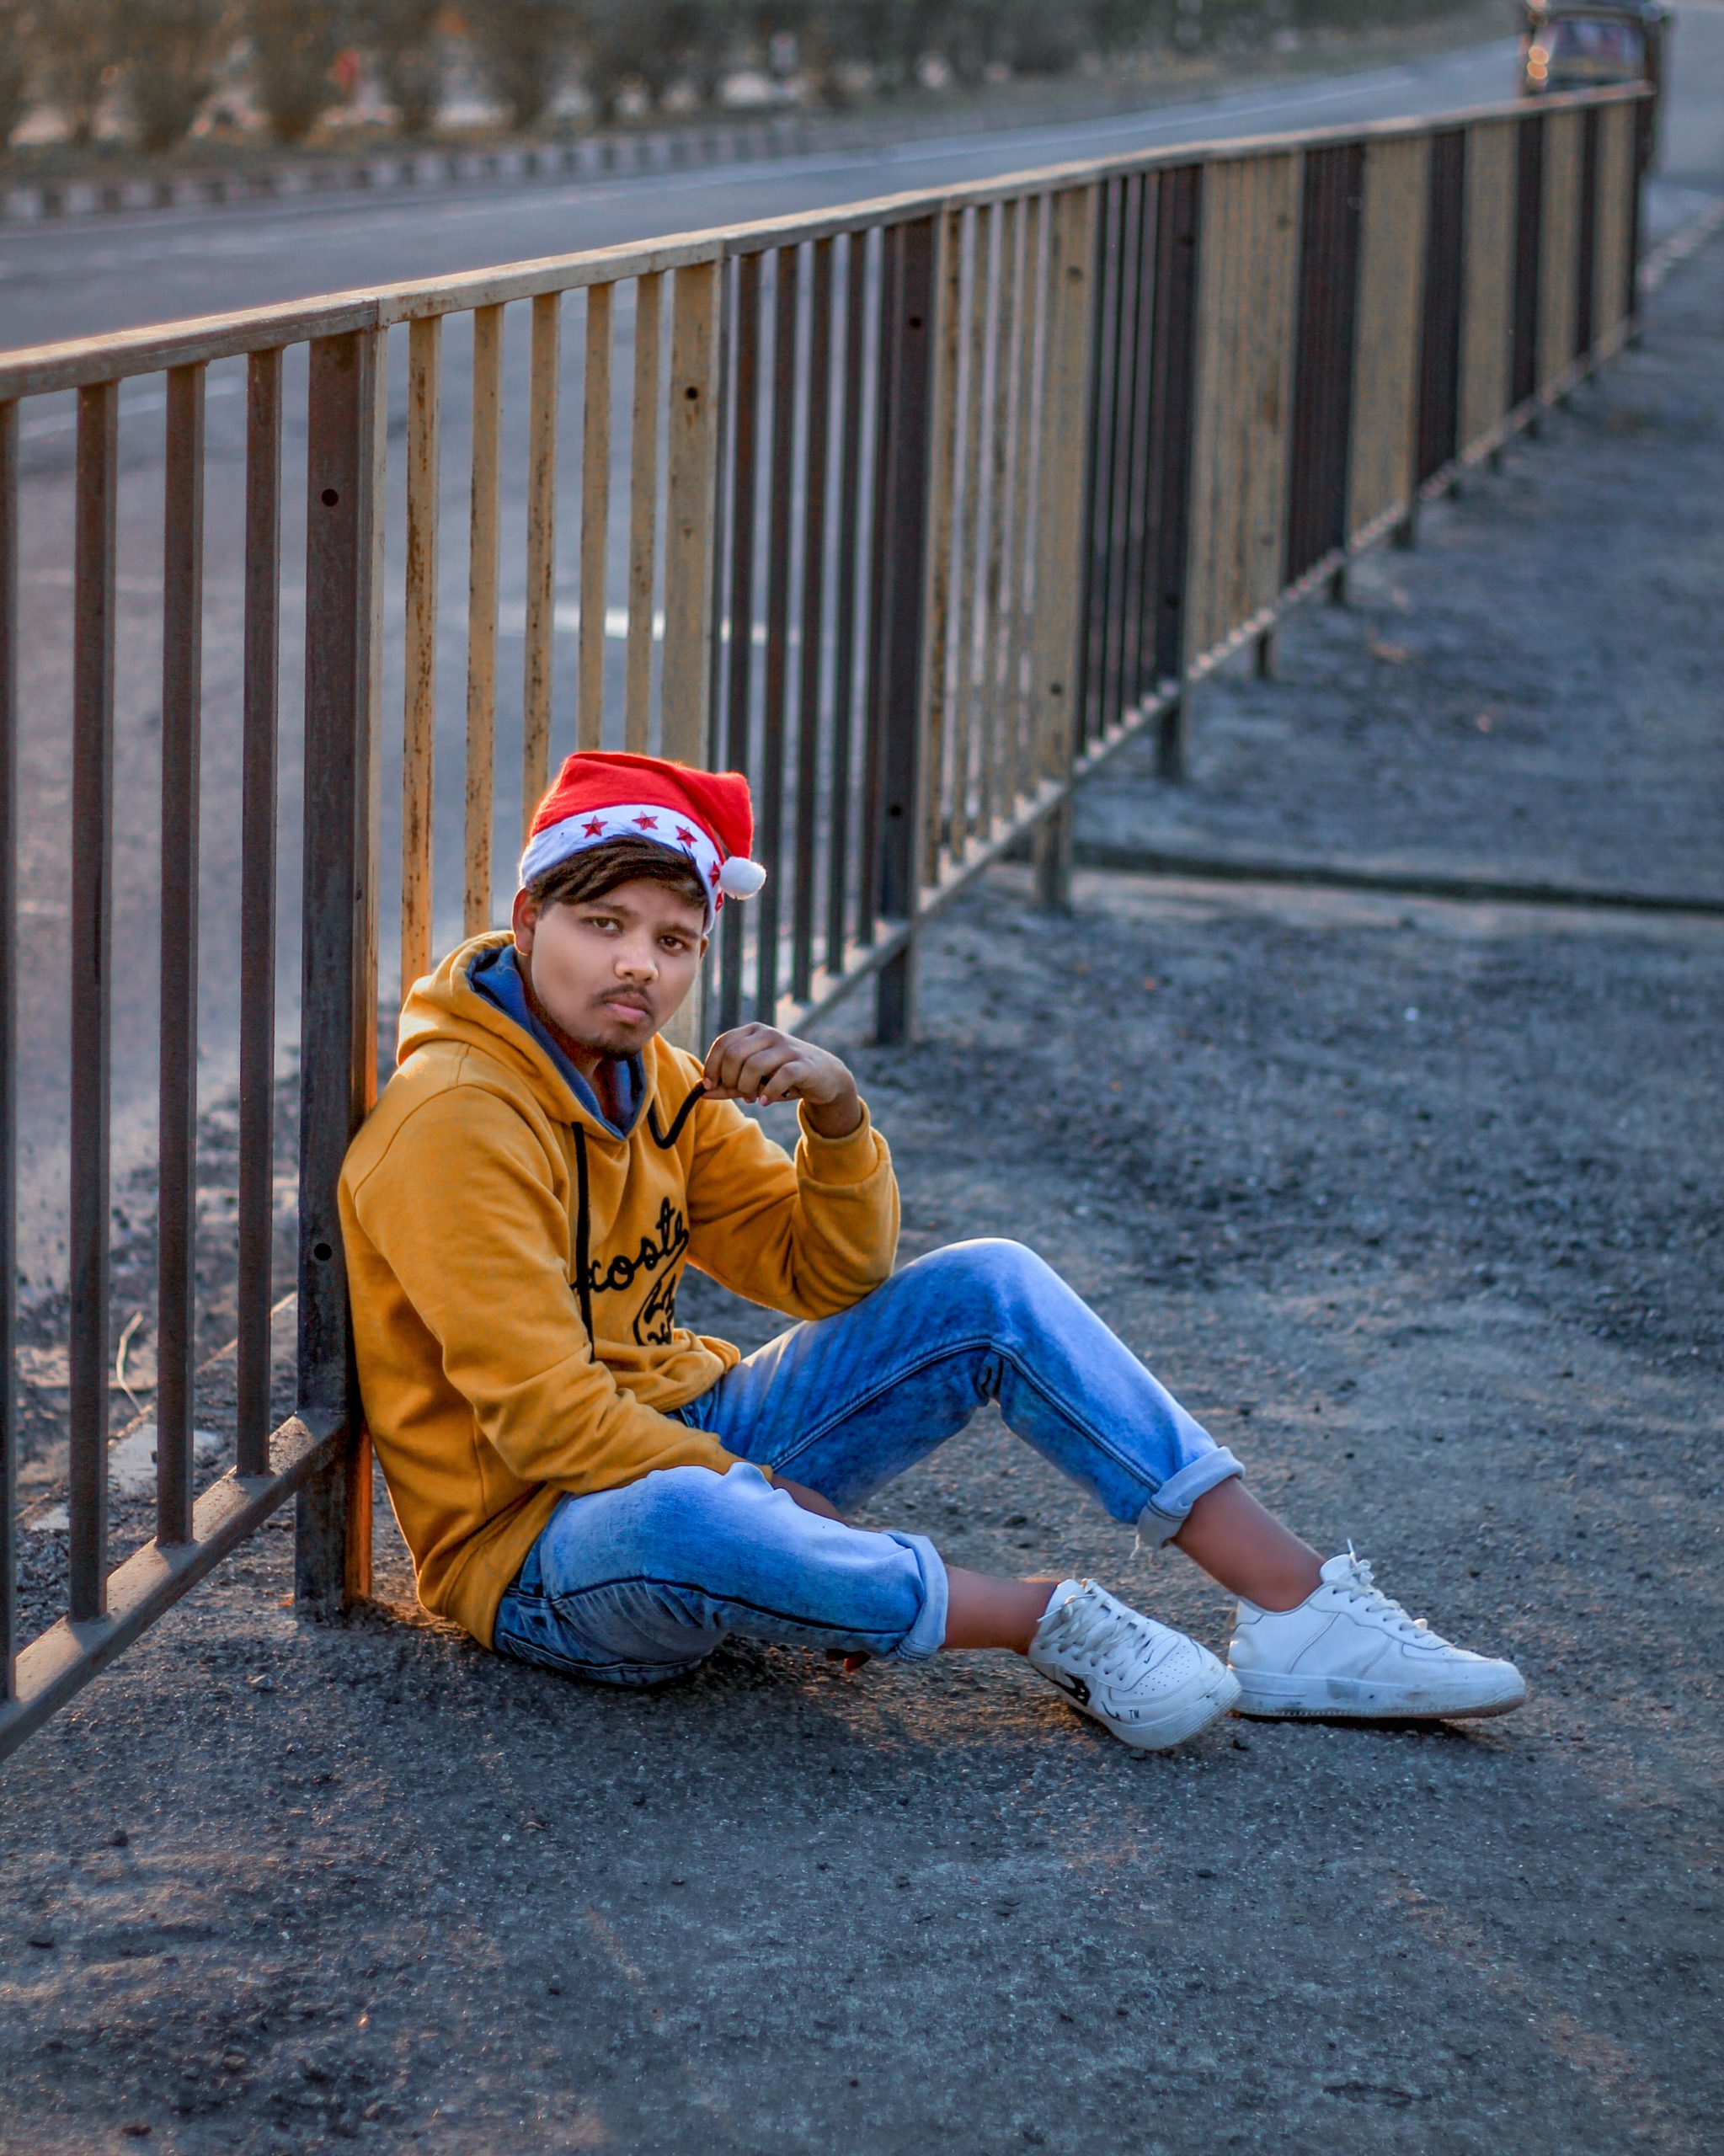 A boy sitting near a fence